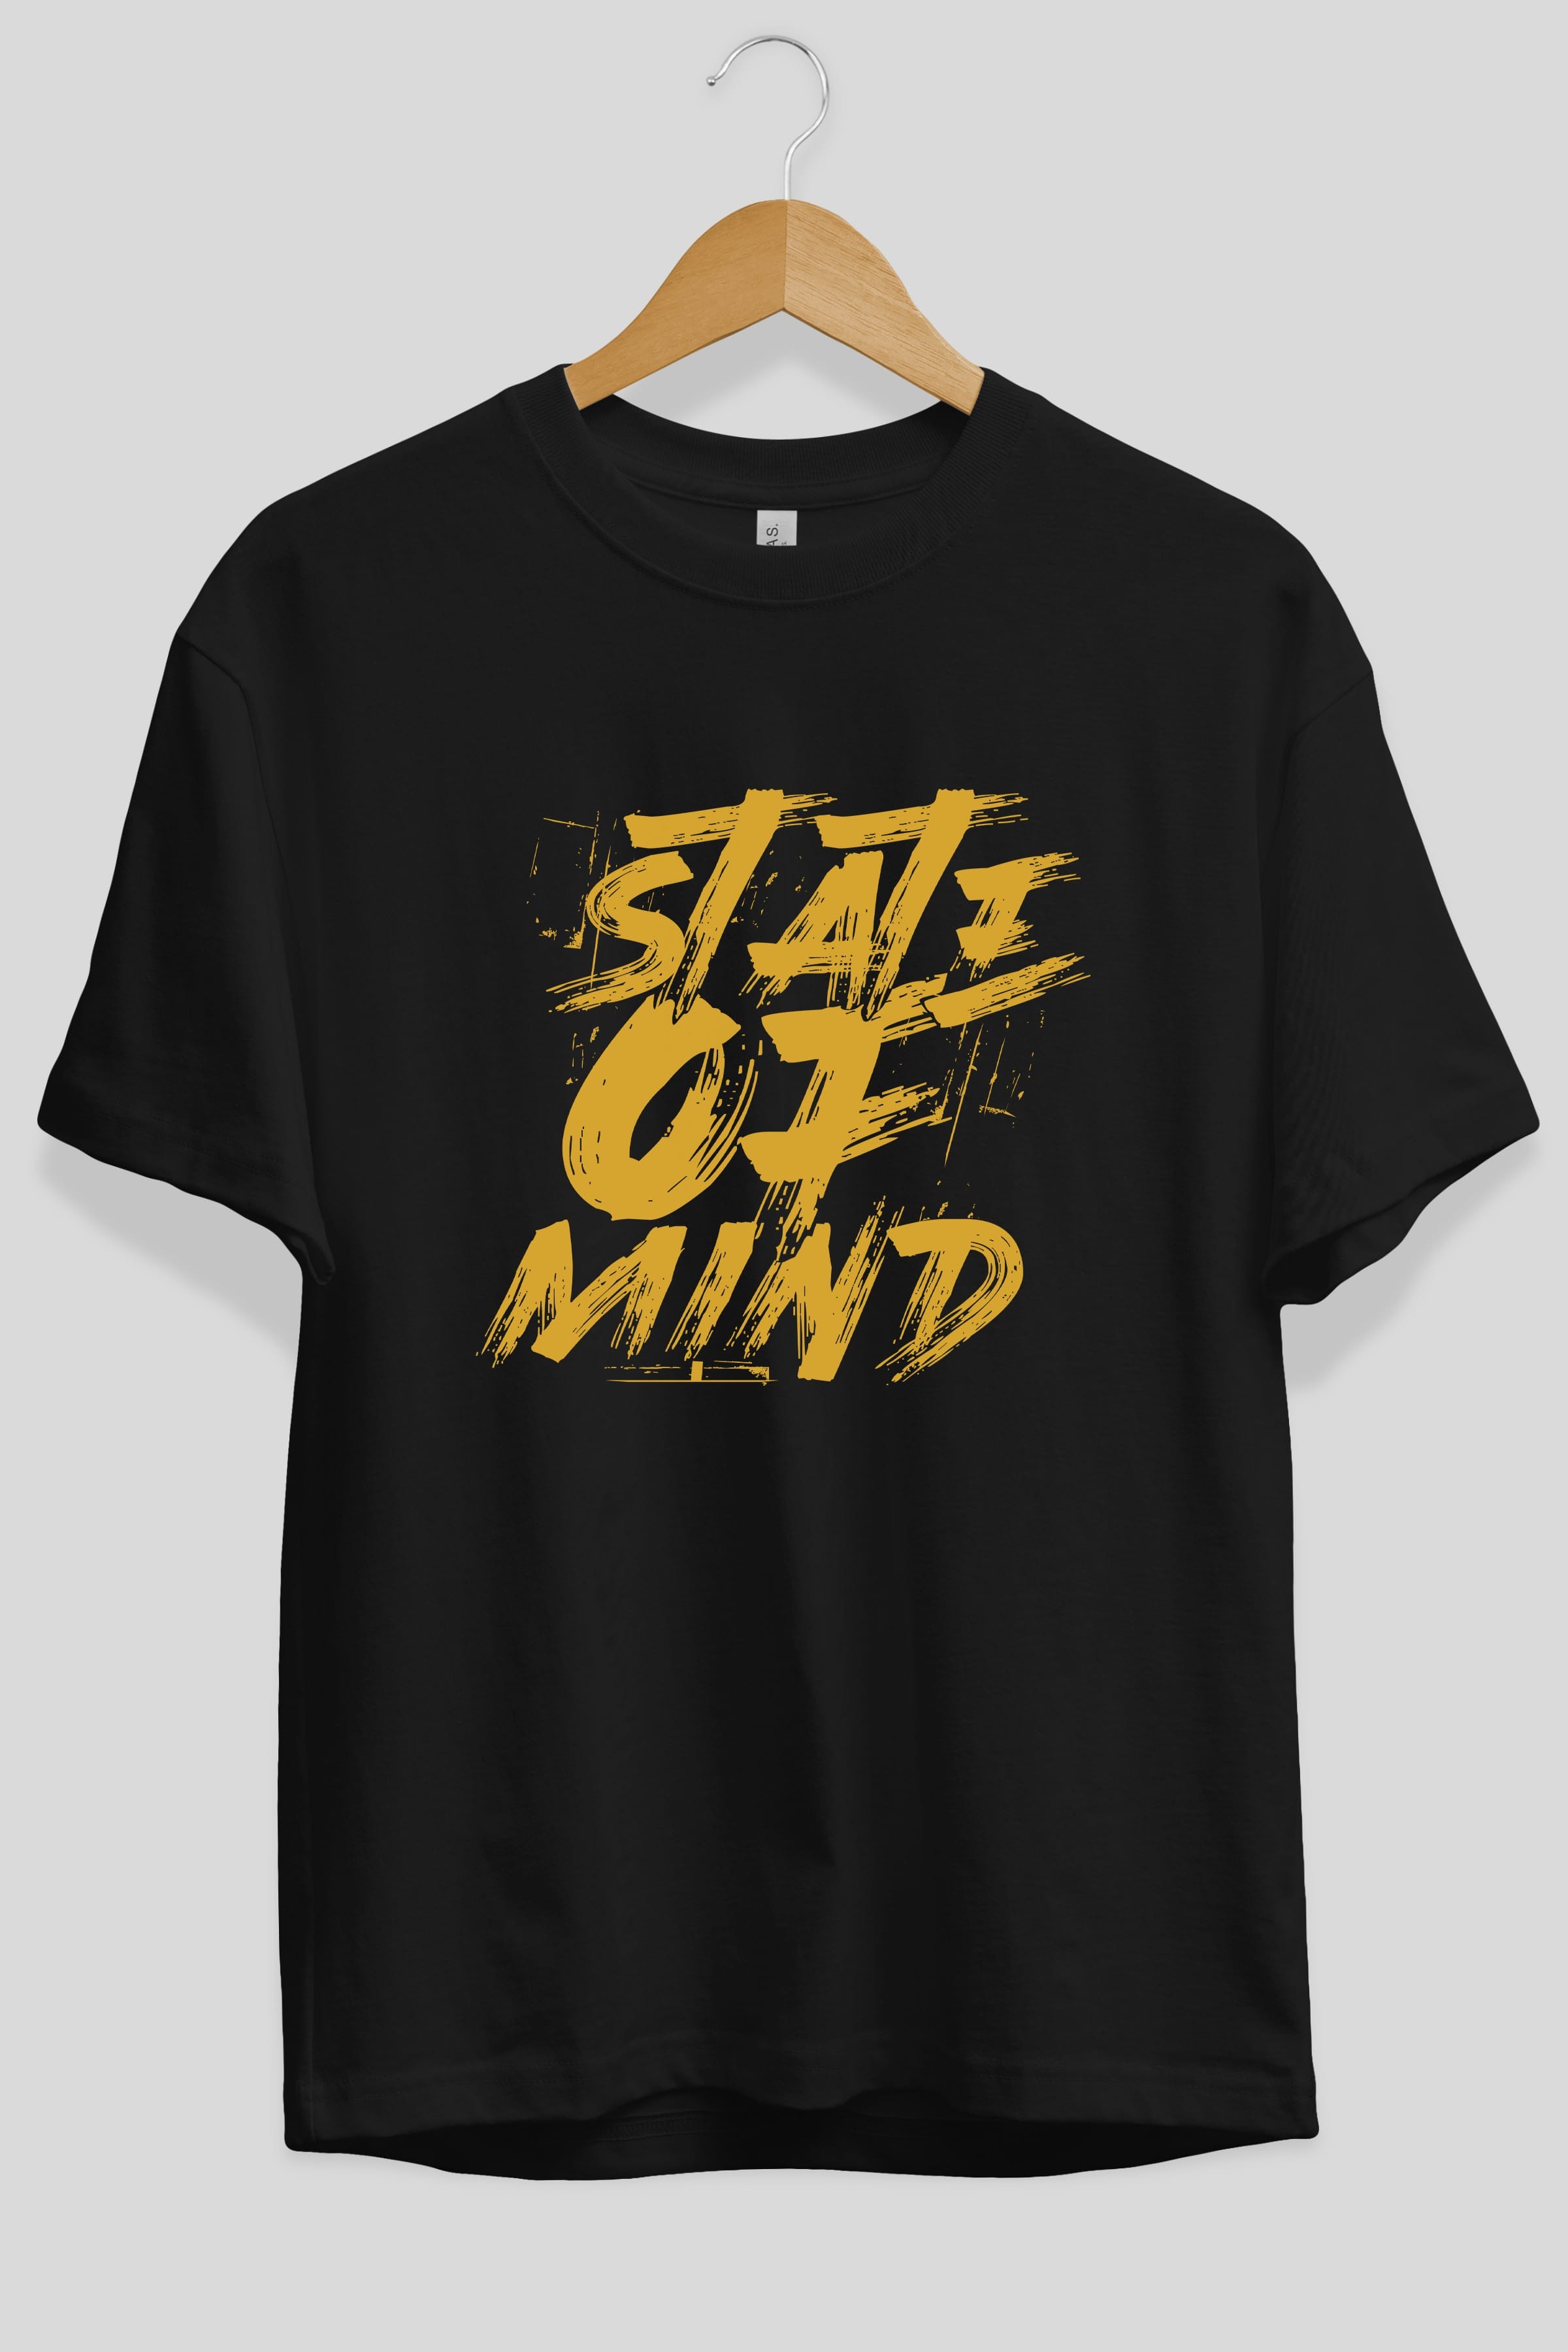 State on Mind Ön Baskılı Oversize t-shirt Erkek Kadın Unisex